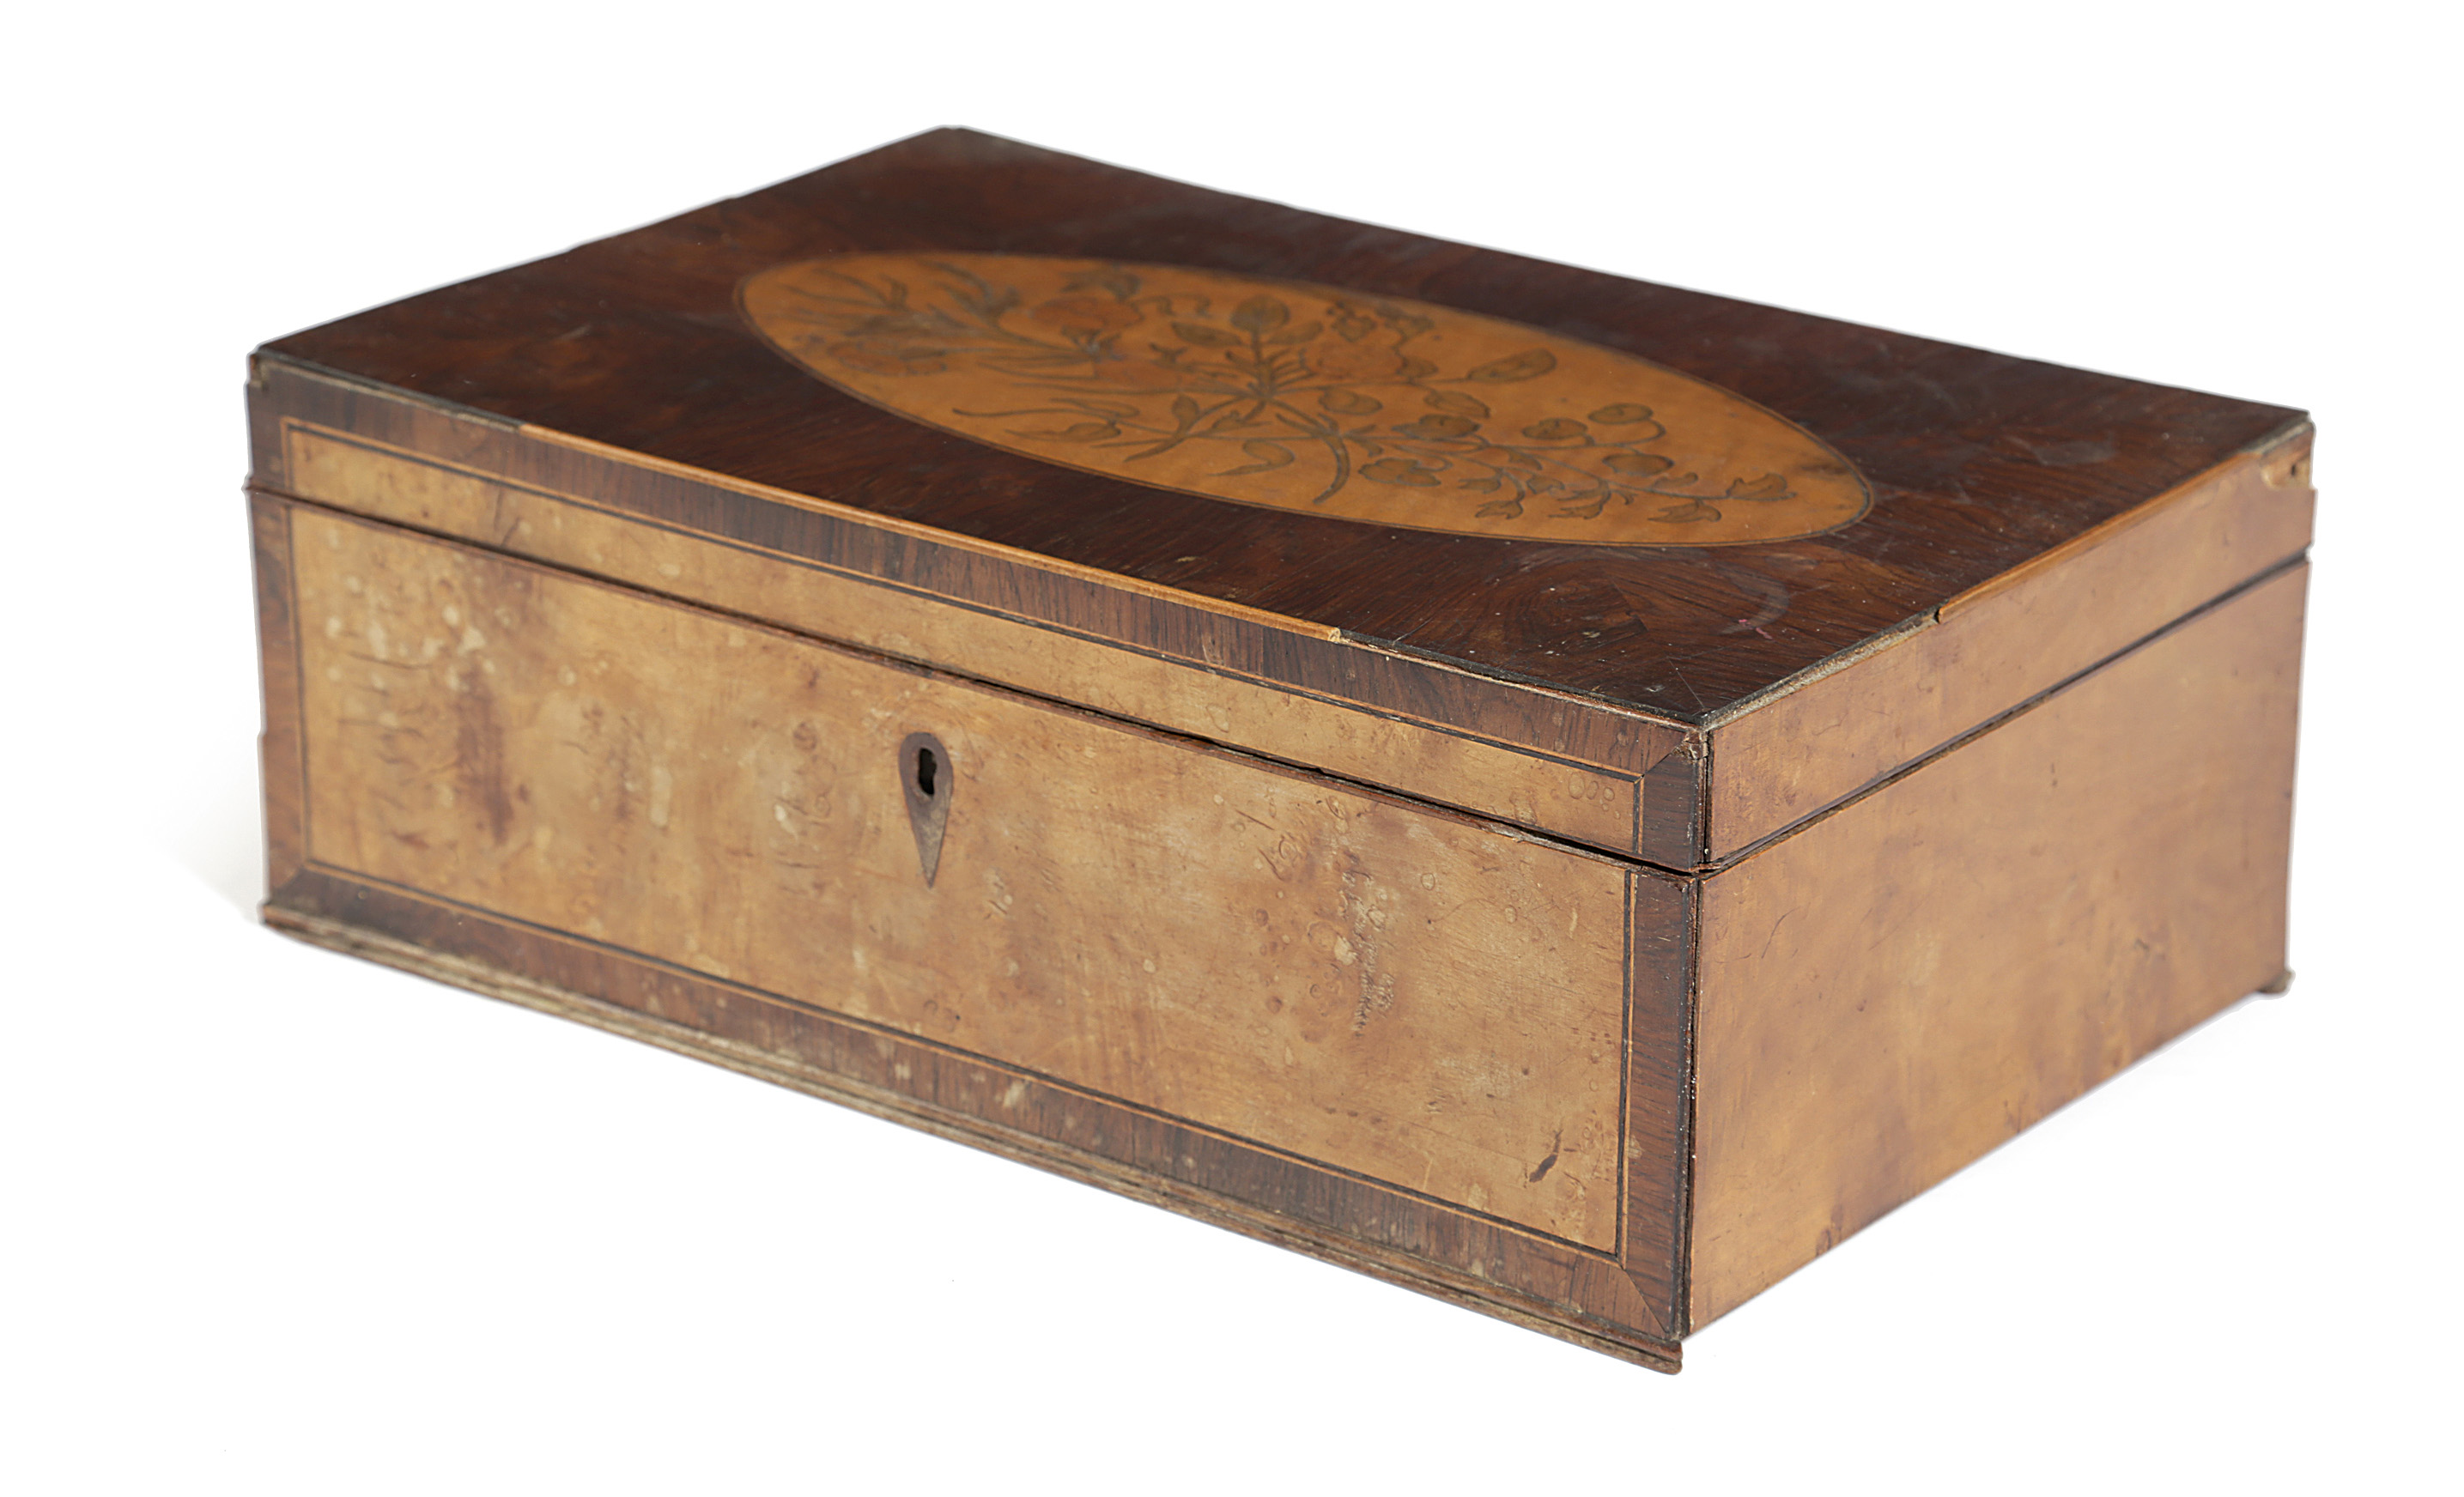 λ A GEORGE III ROSEWOOD AND MARQUETRY BOX C.1790 of rectangular form, the top inlaid with a stained,